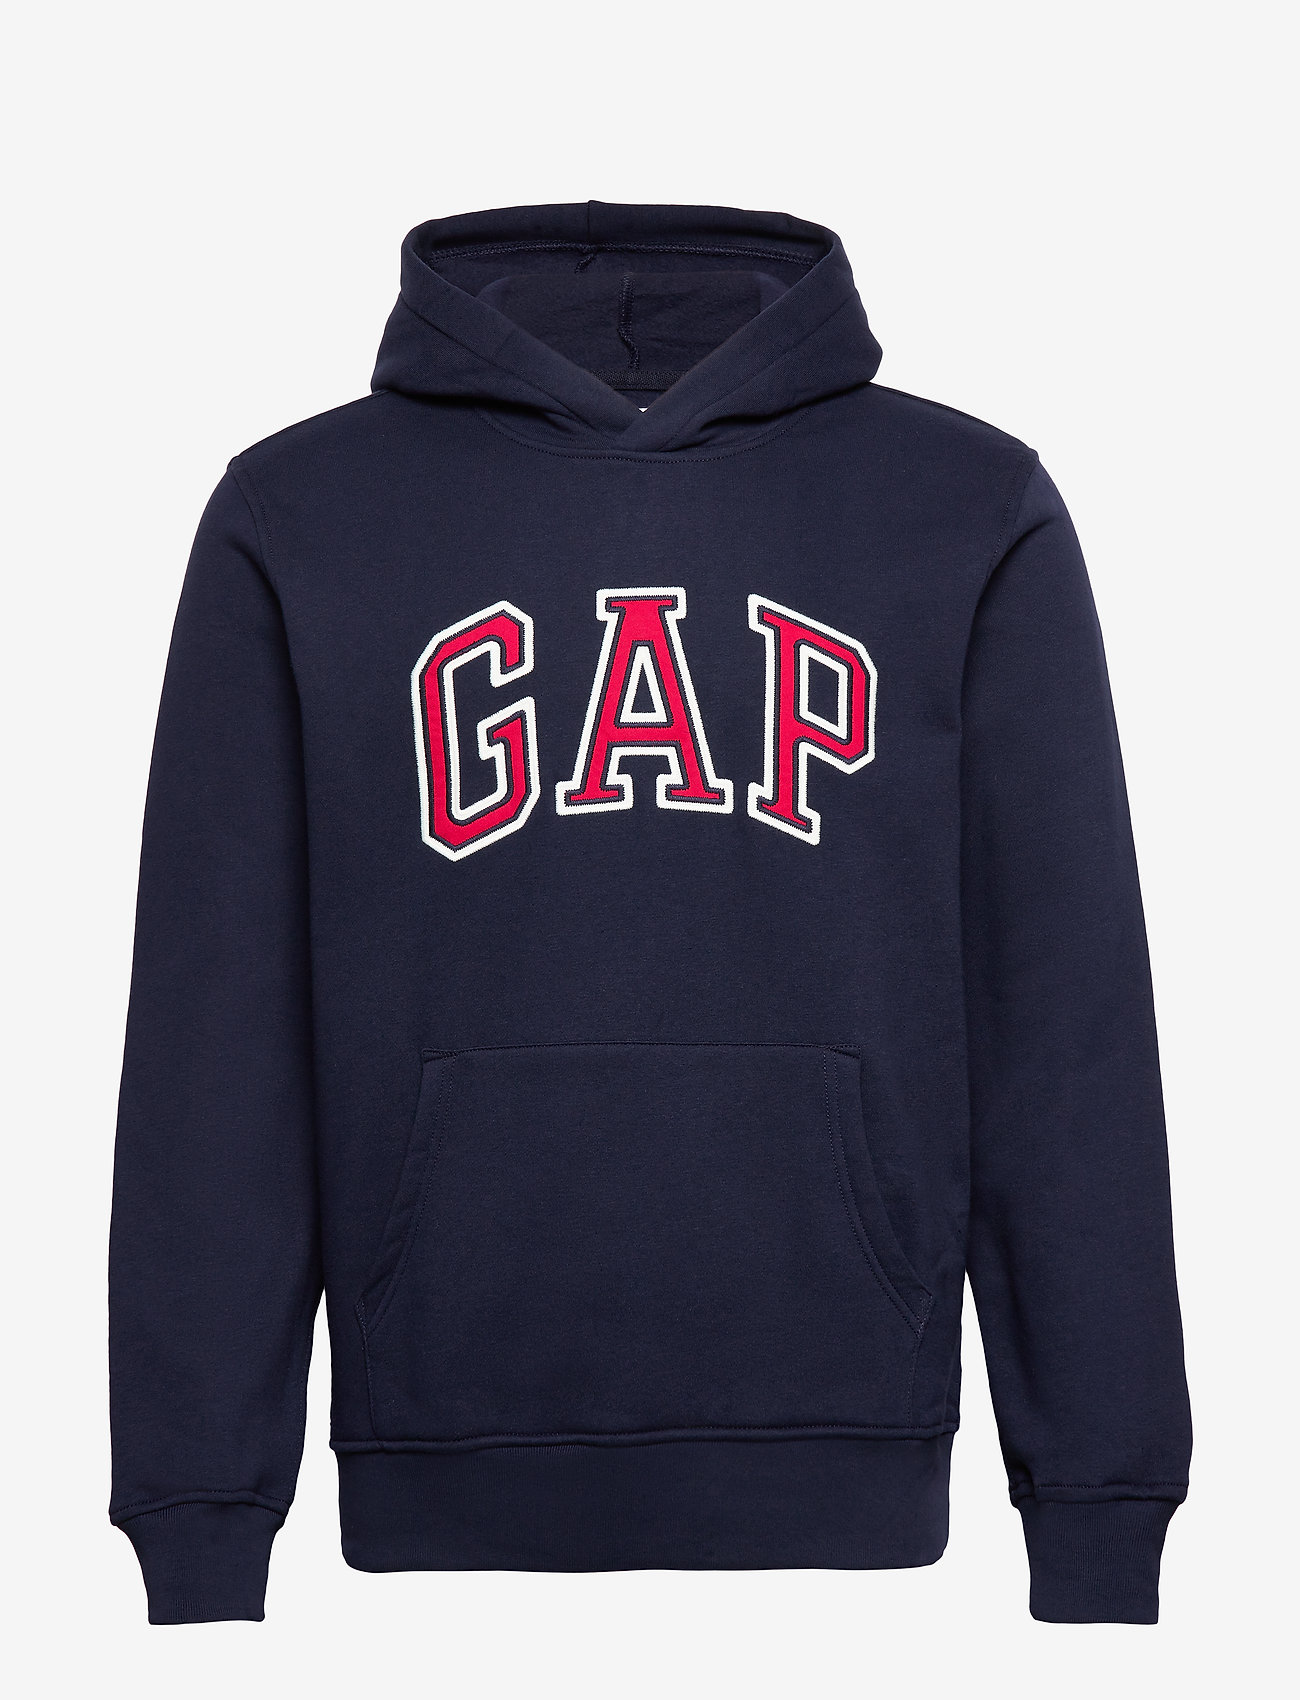 gap pullover hoodies